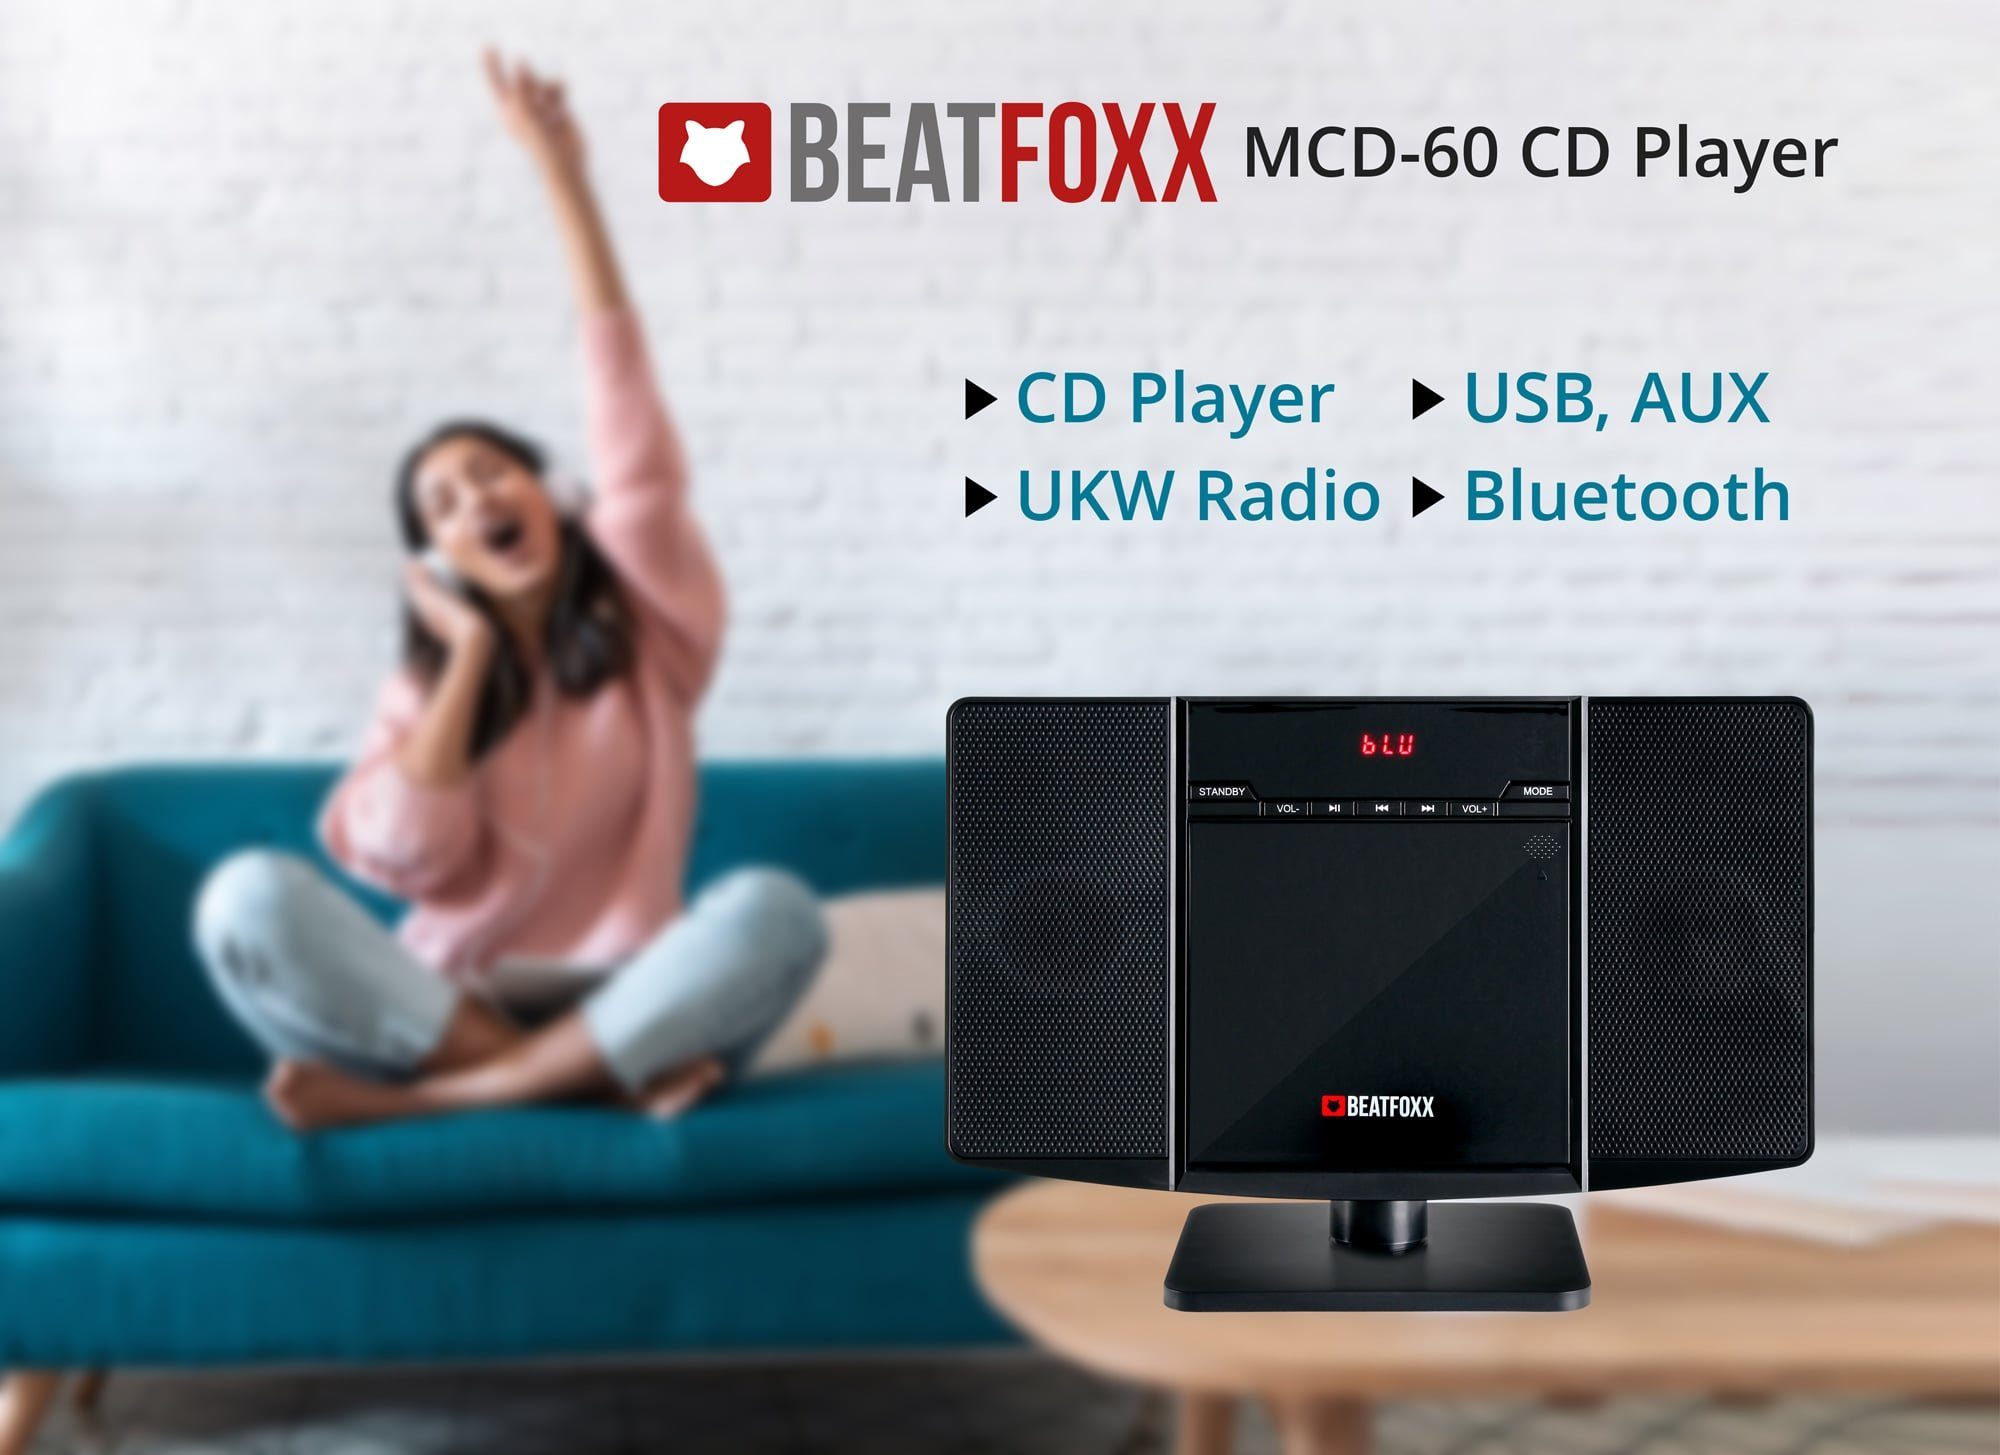 Beatfoxx MCD-60 Vertikal und Microanlage Stereoanlage USB-Slot mit Bluetooth) 6,00 (UKW/MW-Radio, W, CD/MP3-Player